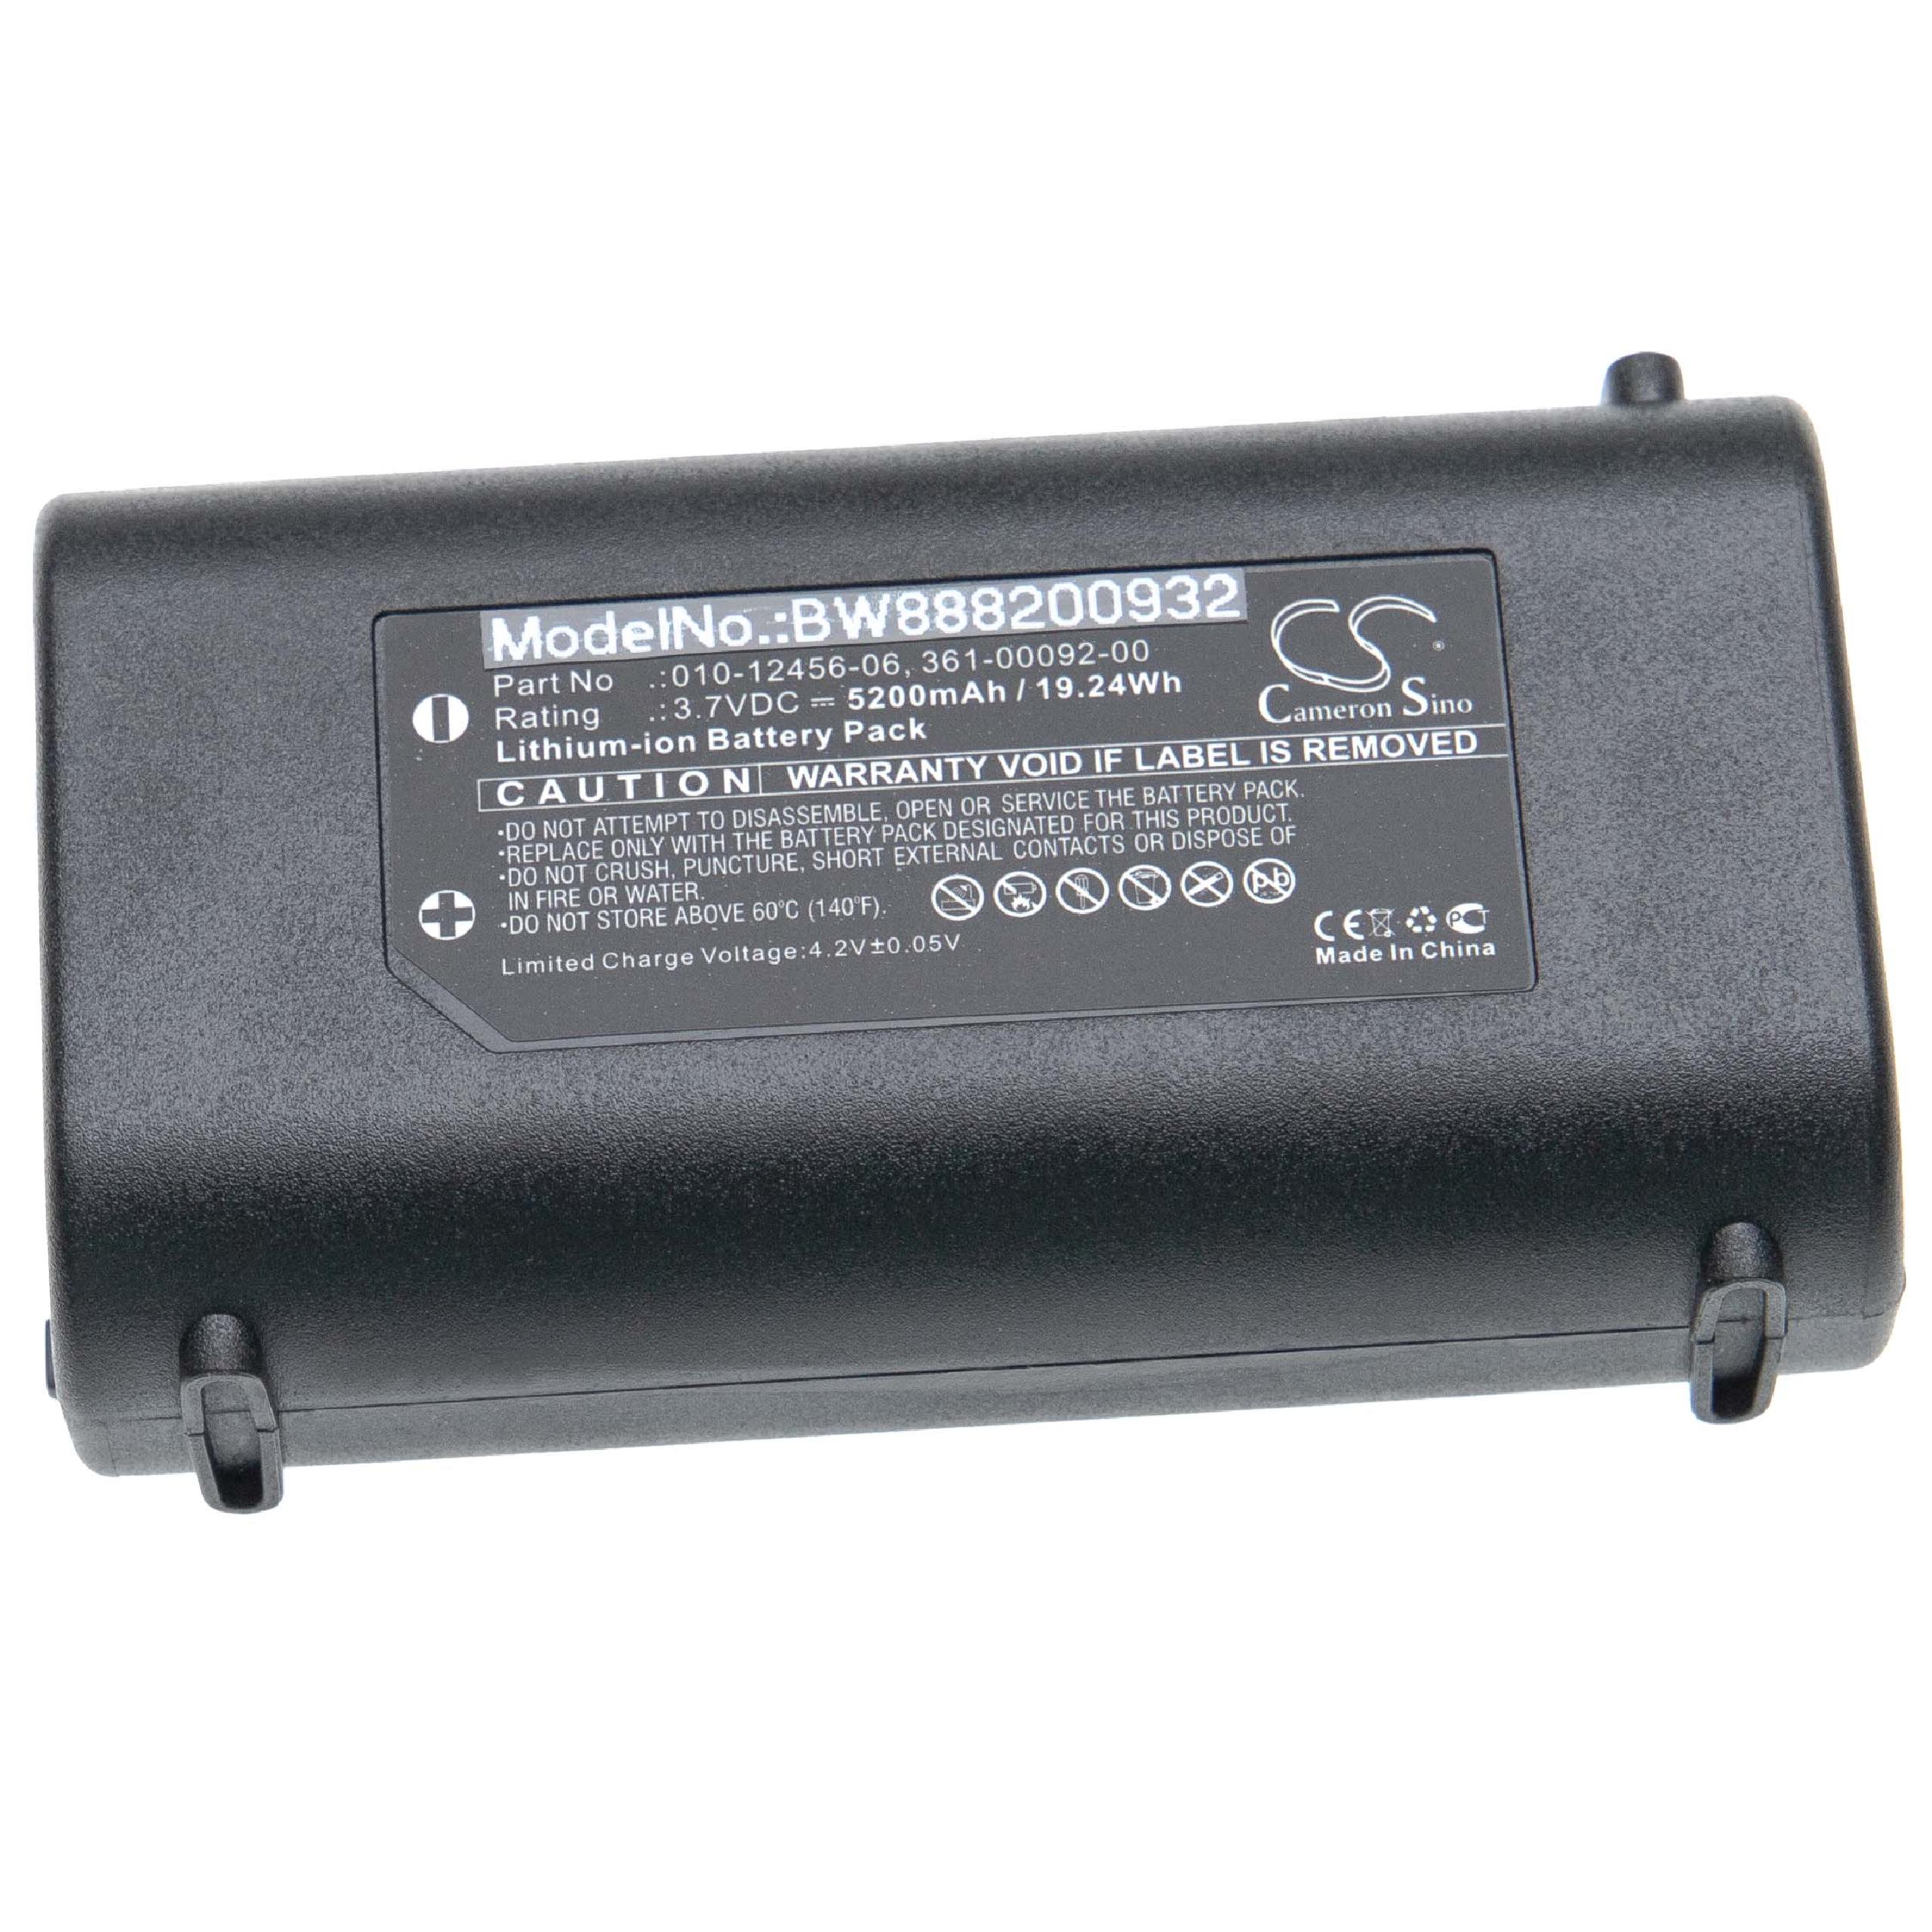 Batterie remplace Garmin 010-12456-06, 361-00092-00 pour traceur GPS - 5200mAh 3,7V Li-ion